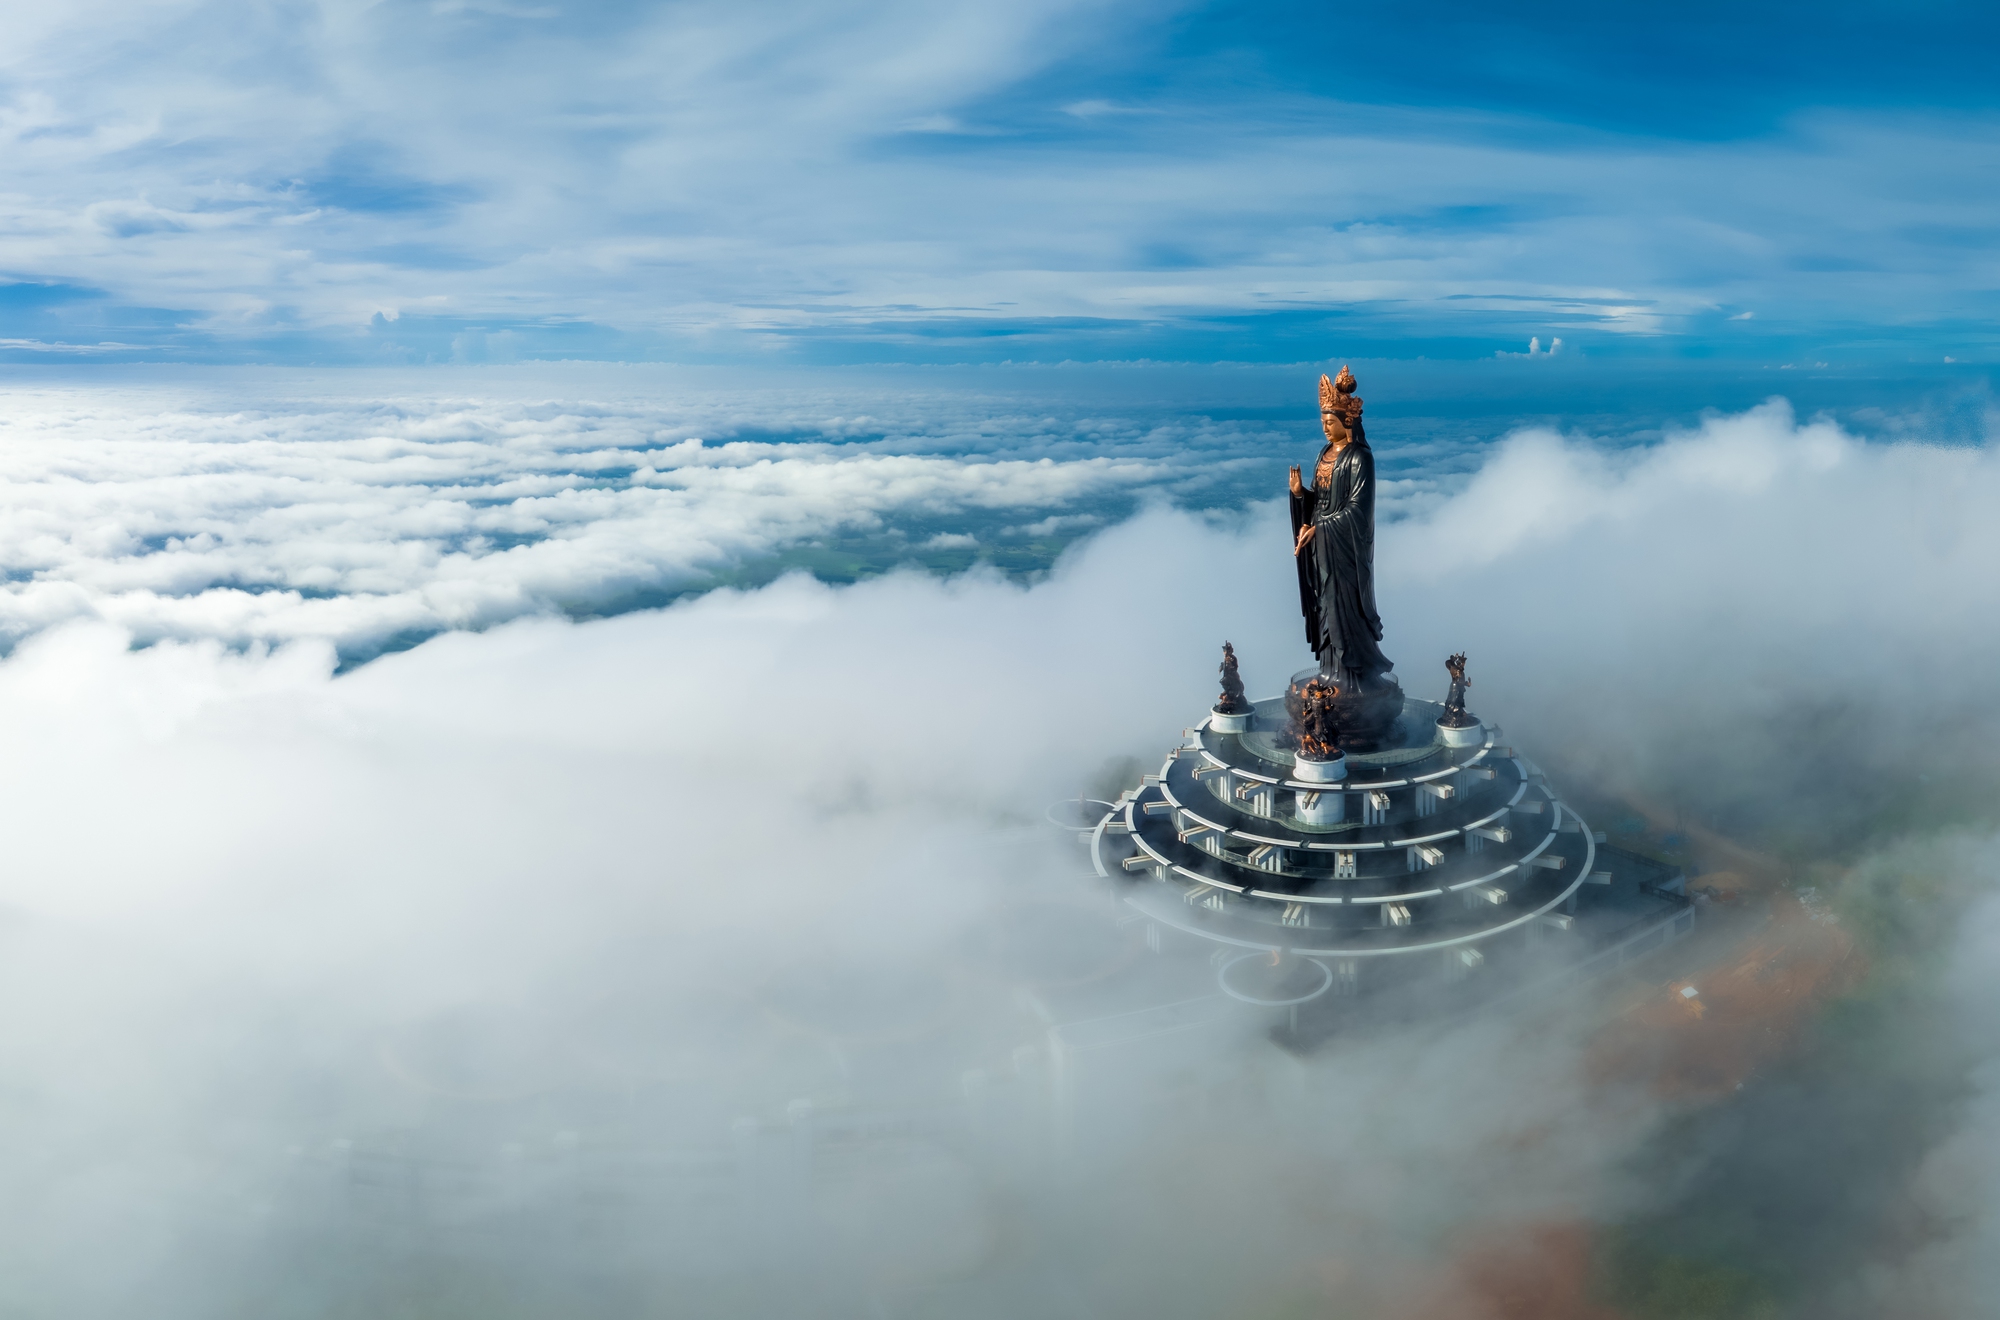 Valentine lãng mạn trên mây tại 3 đỉnh núi nổi tiếng Việt Nam  - Ảnh 4.